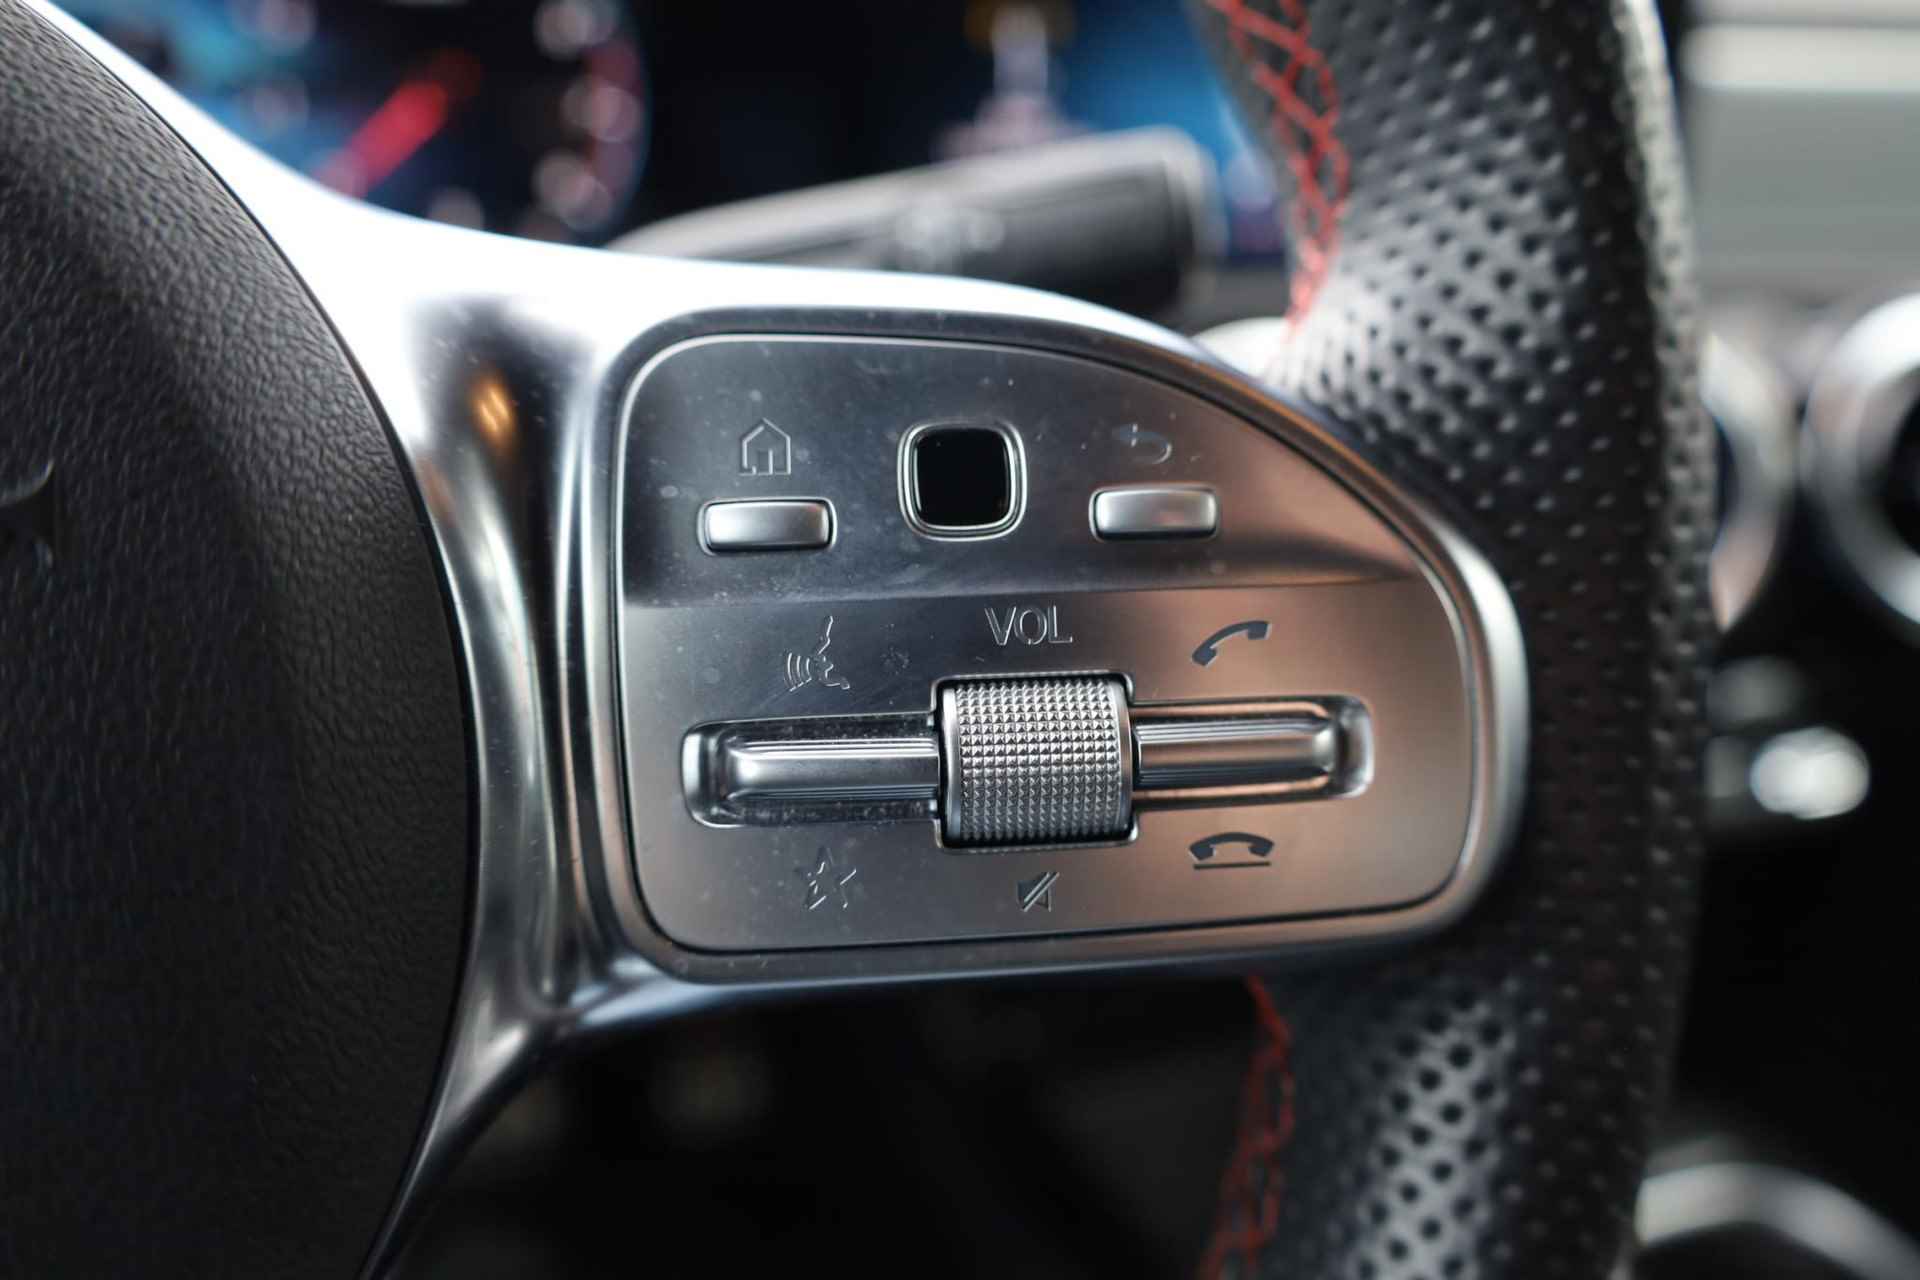 Mercedes-Benz A-klasse 200 Business Solution AMG 120KW/163PK automaat, Leder / alcantara, winterset LMV digitaal dashboard, navigatie, LED verlichting voor en achter, 18" LMV, stoelverwarming, parkeersensoren voor en achter, AMG bumpers - 18/44